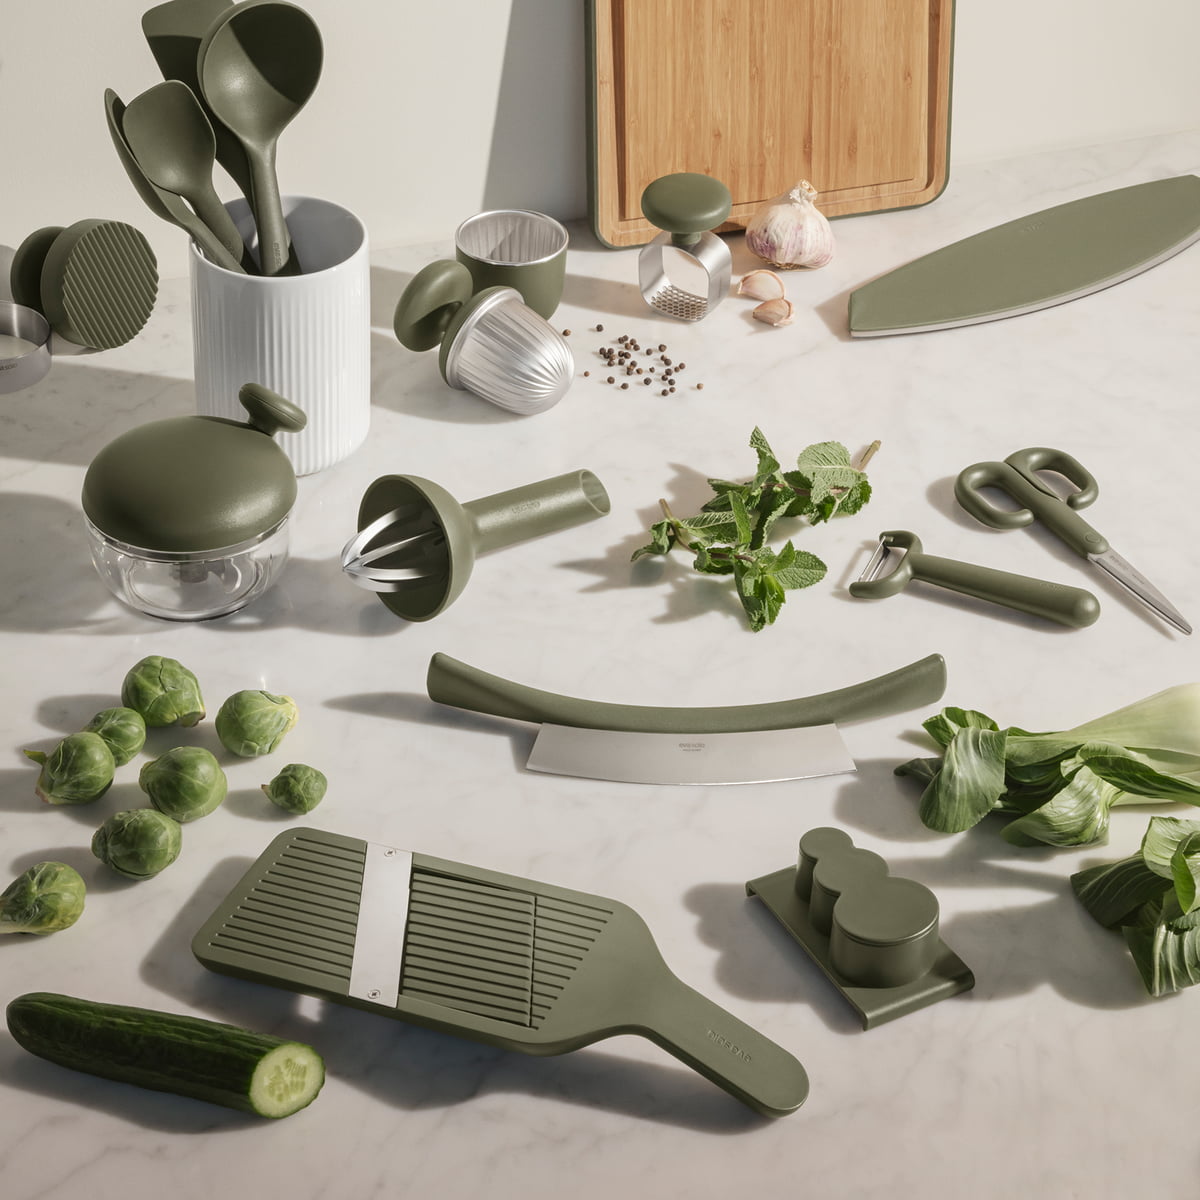 Eva Solo - Green Tool salad spinner